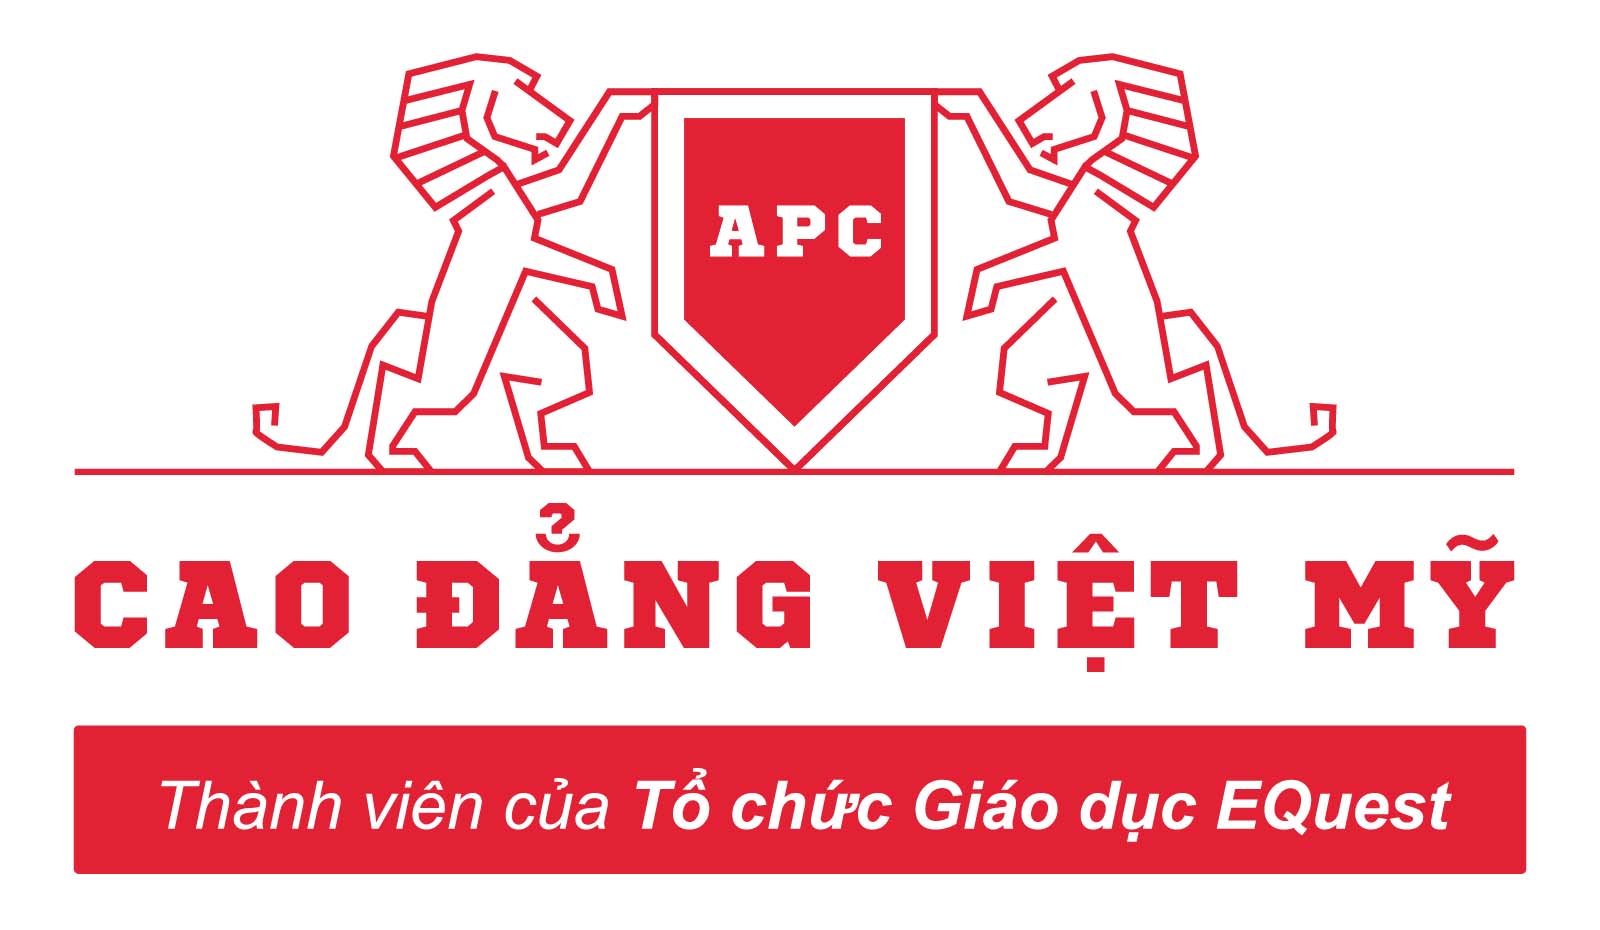 Trường Cao Đẳng Việt Mỹ (APC)